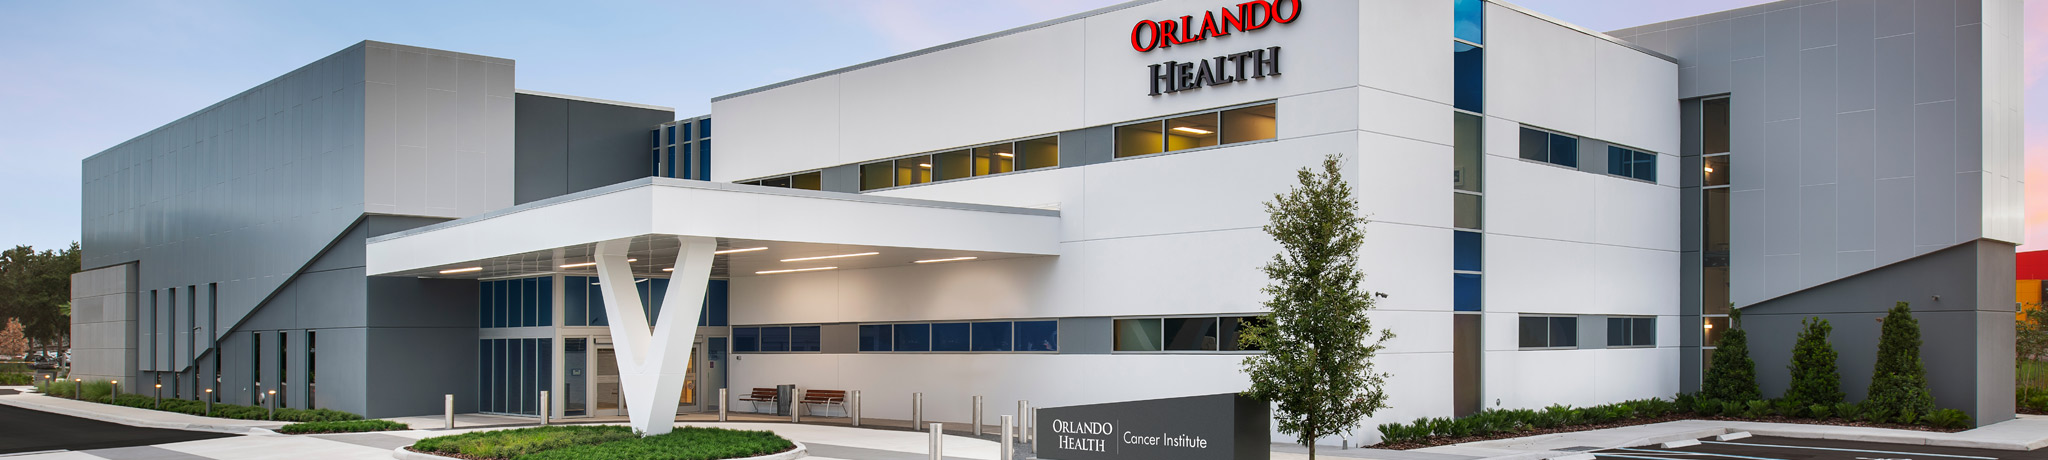 Orlando Health Cancer Institute